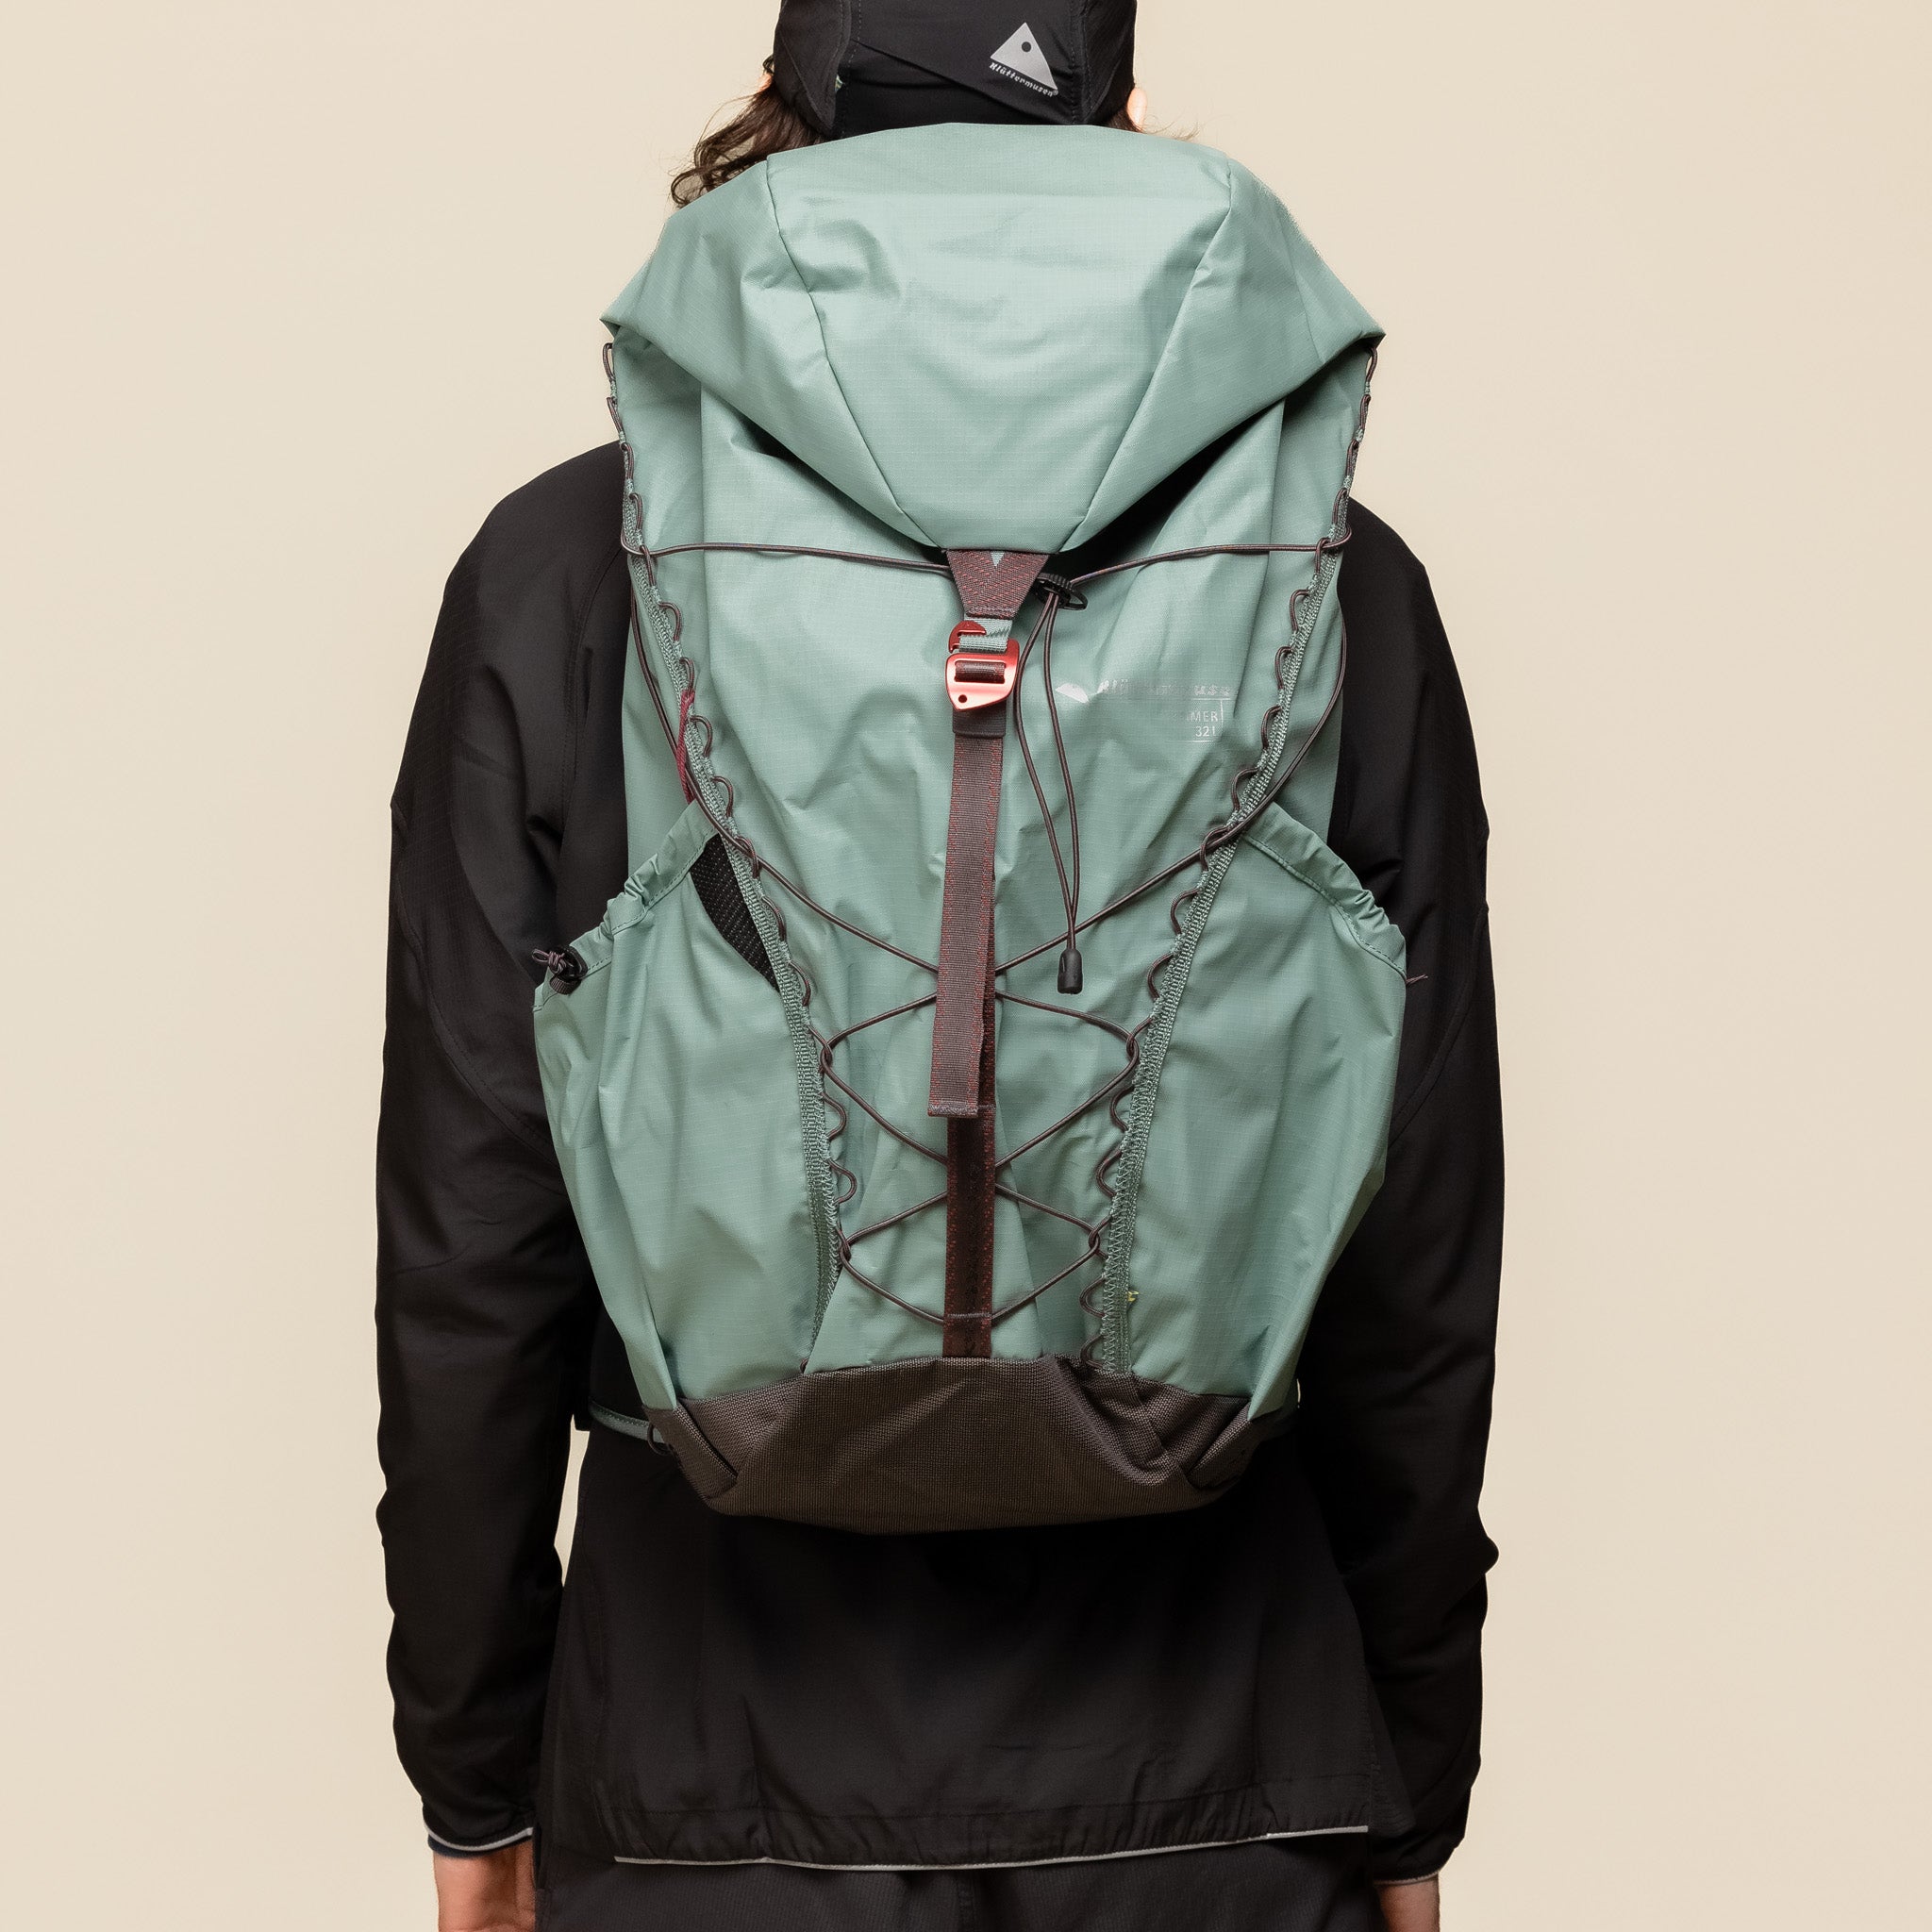 Klättermusen - Brimer Lightweight Backpack 24L - Jade Green 40444